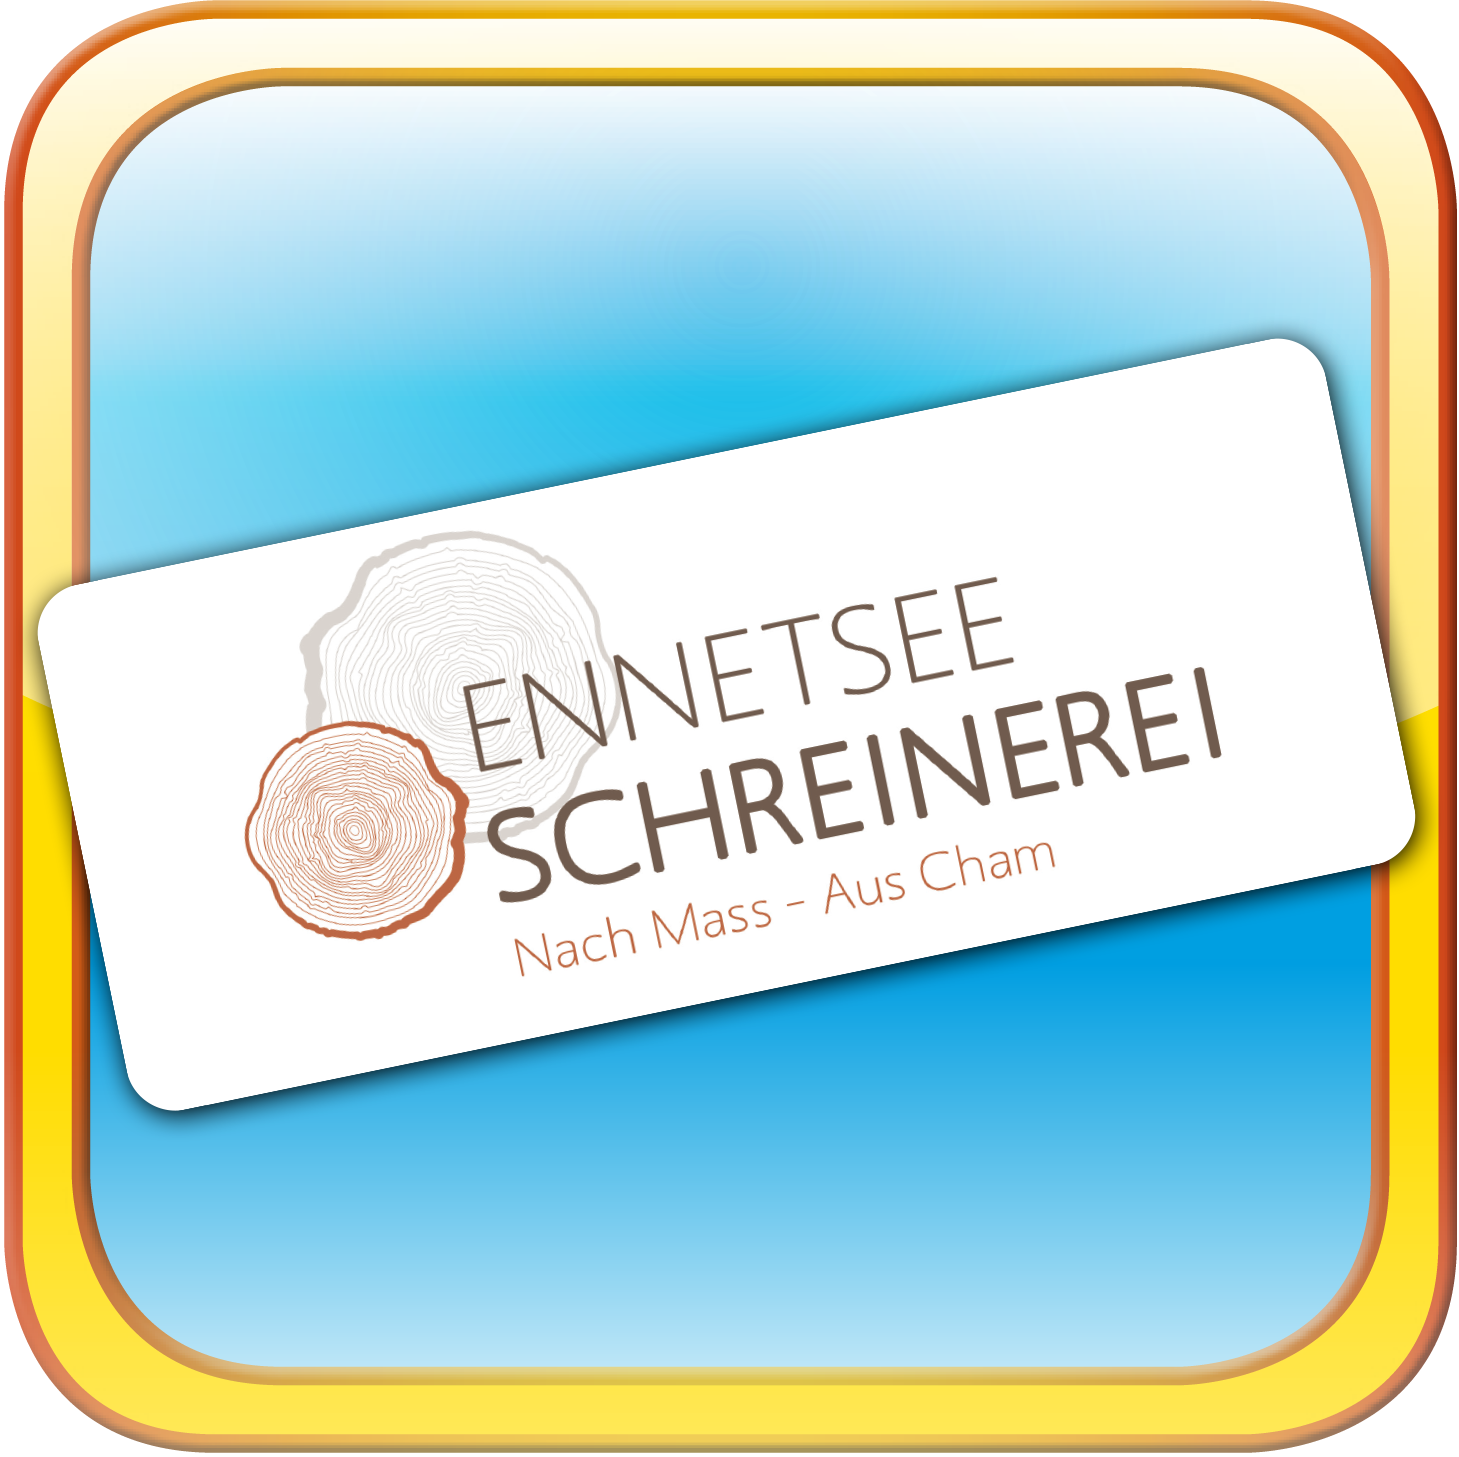 Ennetsee Schreinerei unterstützt das Beltane Parkvolleyball-Turnier in Cham Zug | Ennetsee Schreinerei und das Beltane Volleyball-Turnier